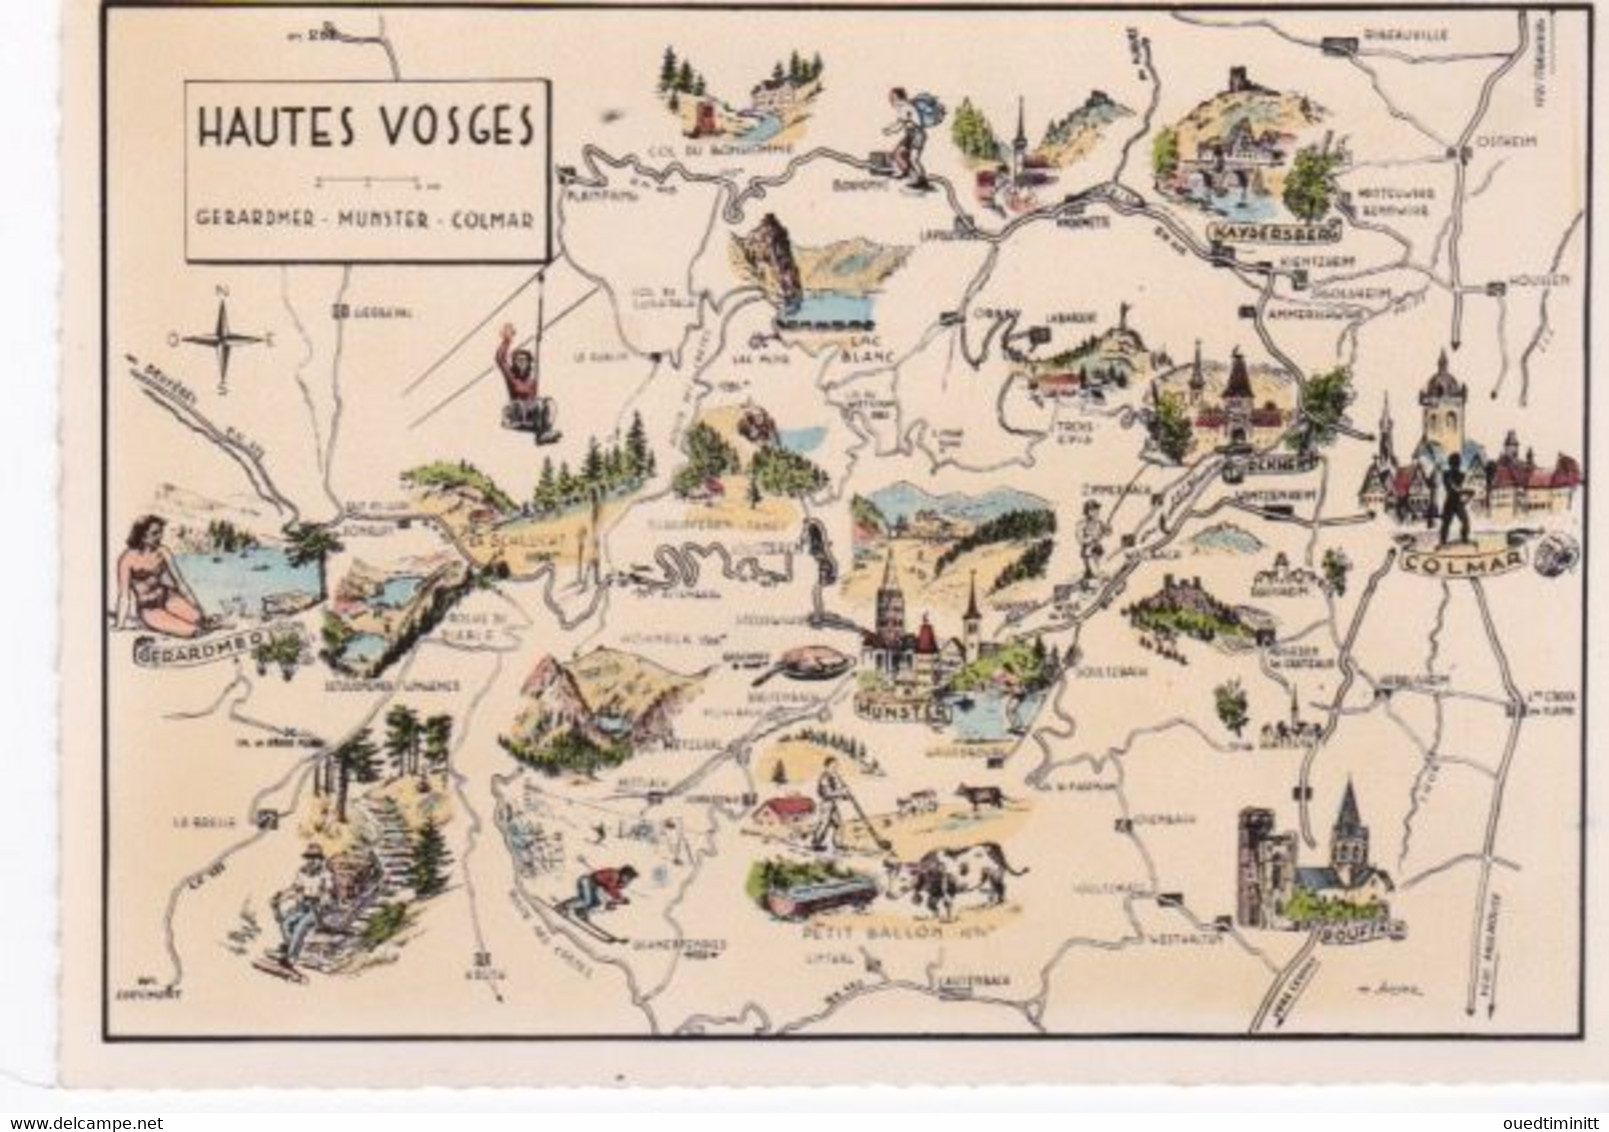 Carte Géographique Des Hautes Vosges, Gerardmer, Munster, Colmar, Cpsm Dentelée - Cartes Géographiques